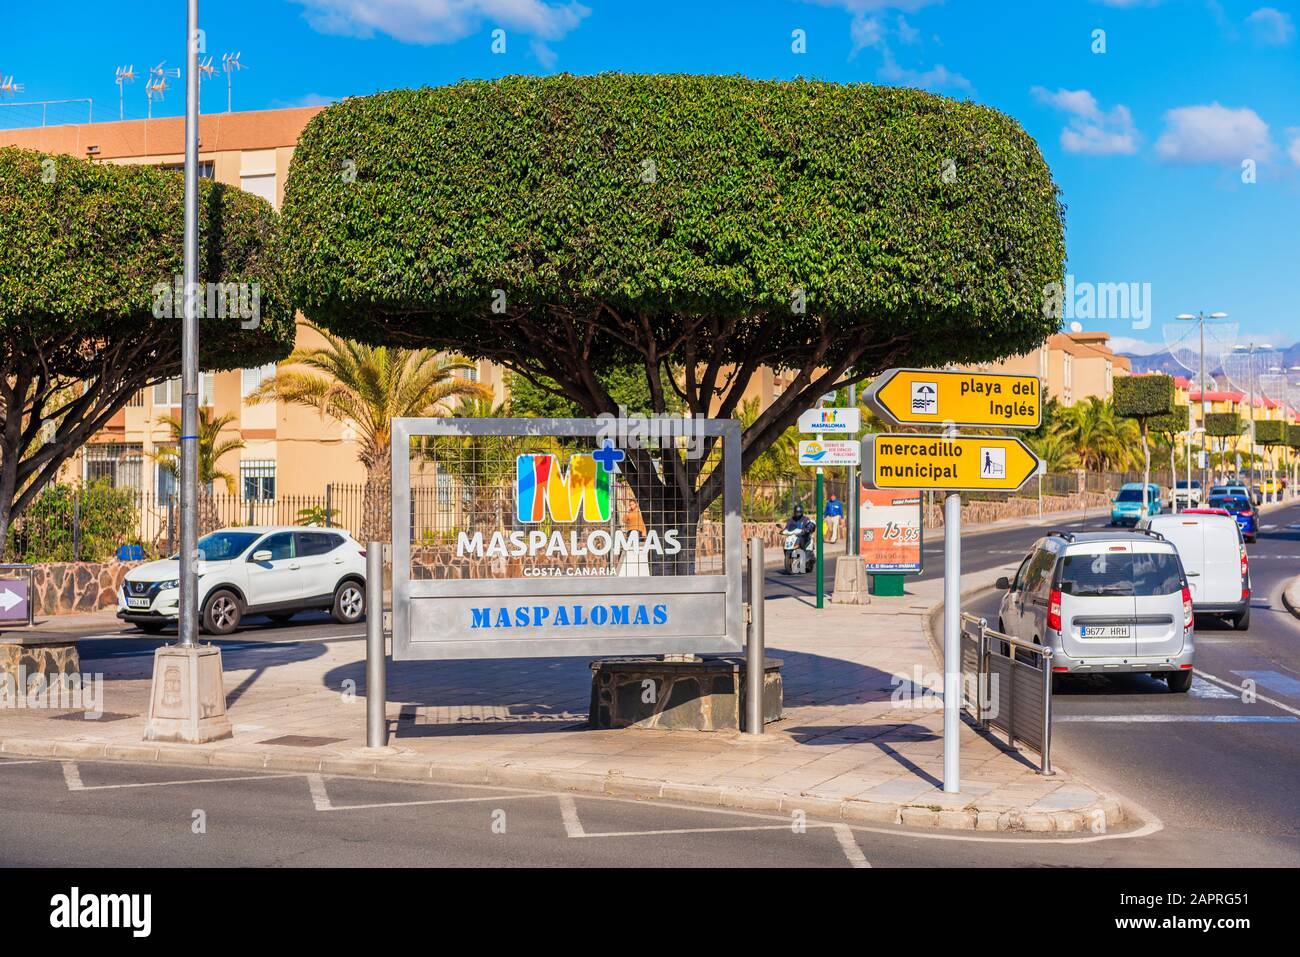 Eintrittszeichen für Maspalomas, Gran Canaria, Kanarische Inseln, Spanien. Maspalomas liegt im Süden der Insel und ist ein wichtiges Touristenziel Stockfoto